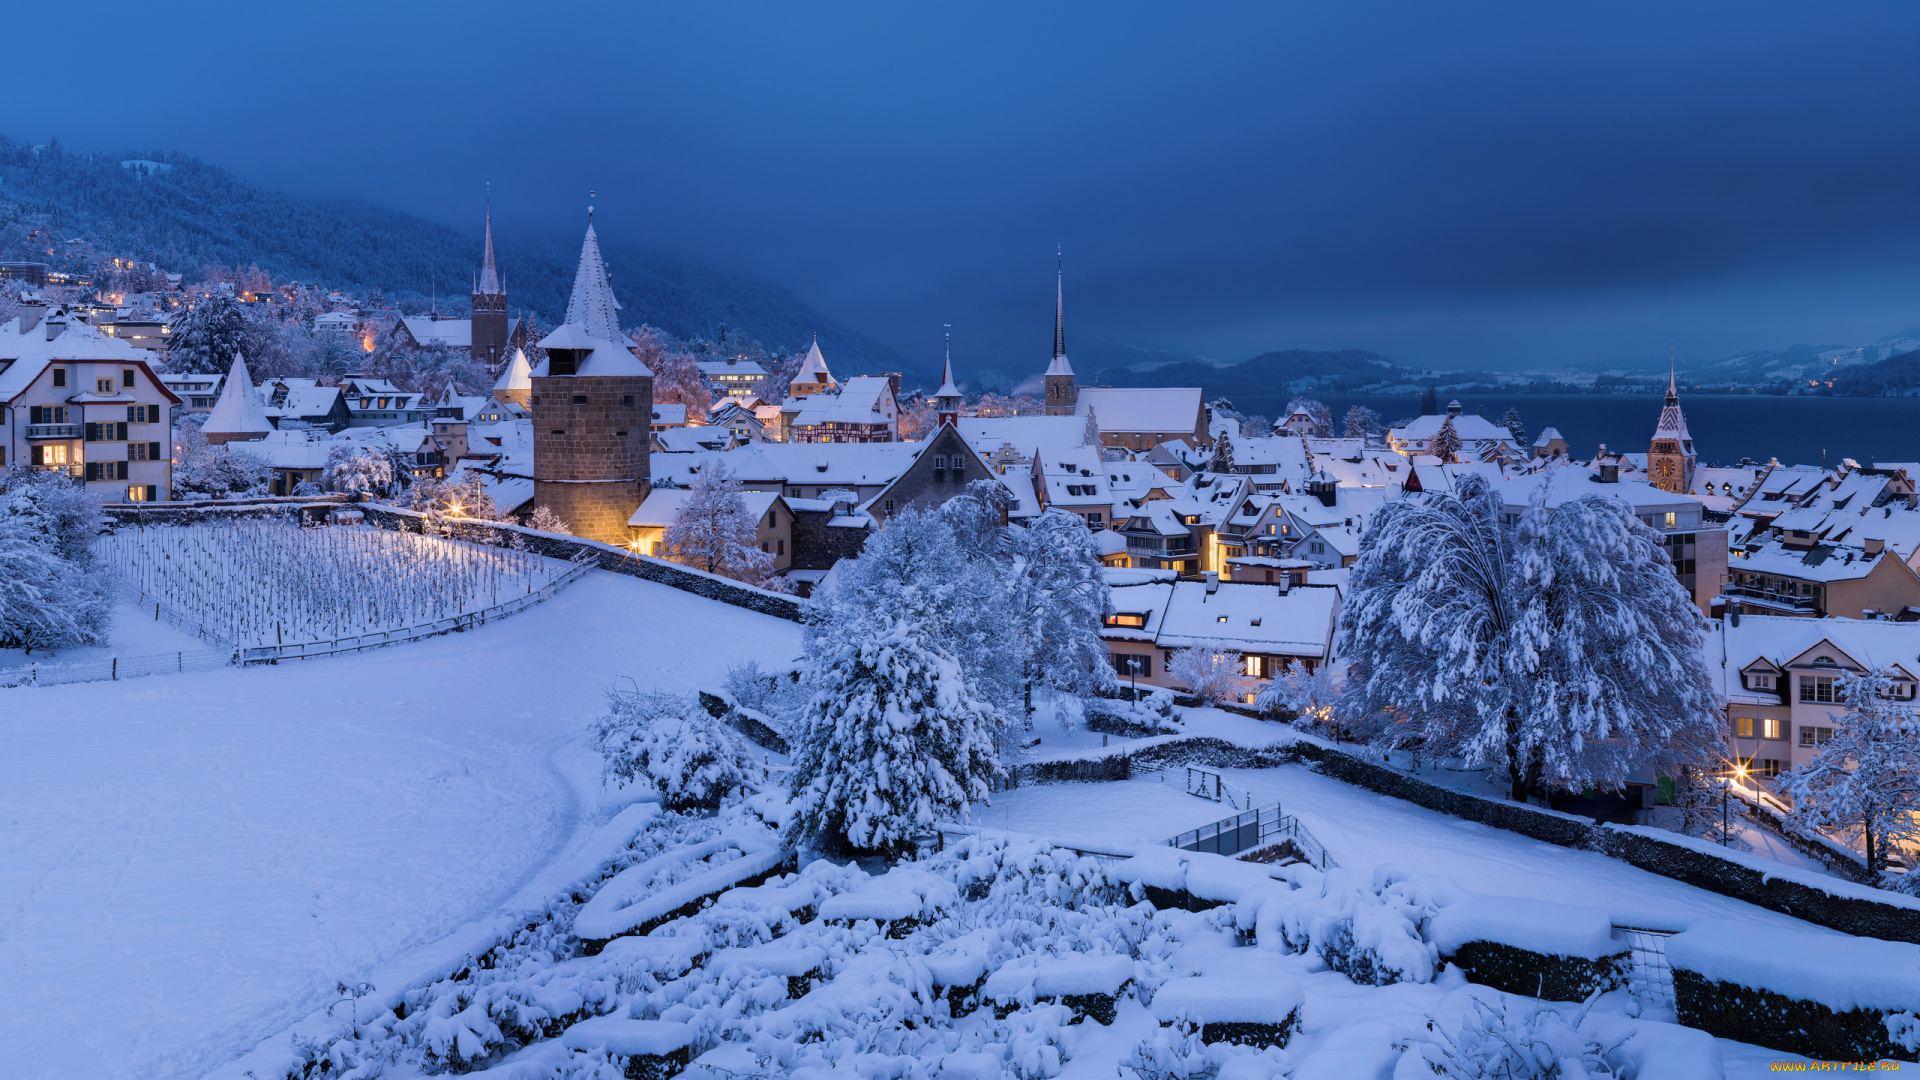 города, -, пейзажи, зима, снег, швейцария, фотография, церковь, вечер, деревня, крыши